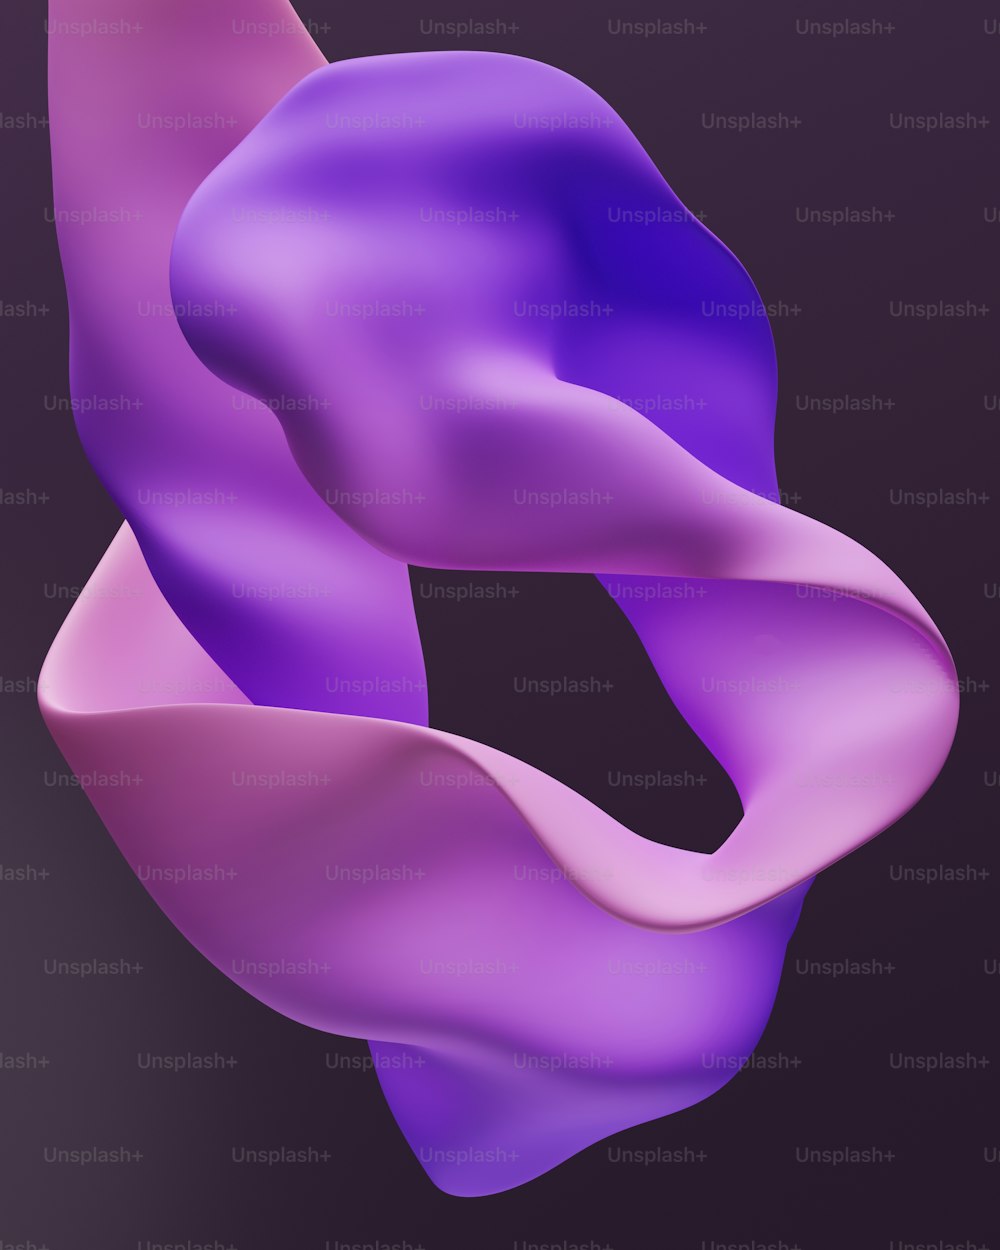 Un objeto púrpura con fondo negro